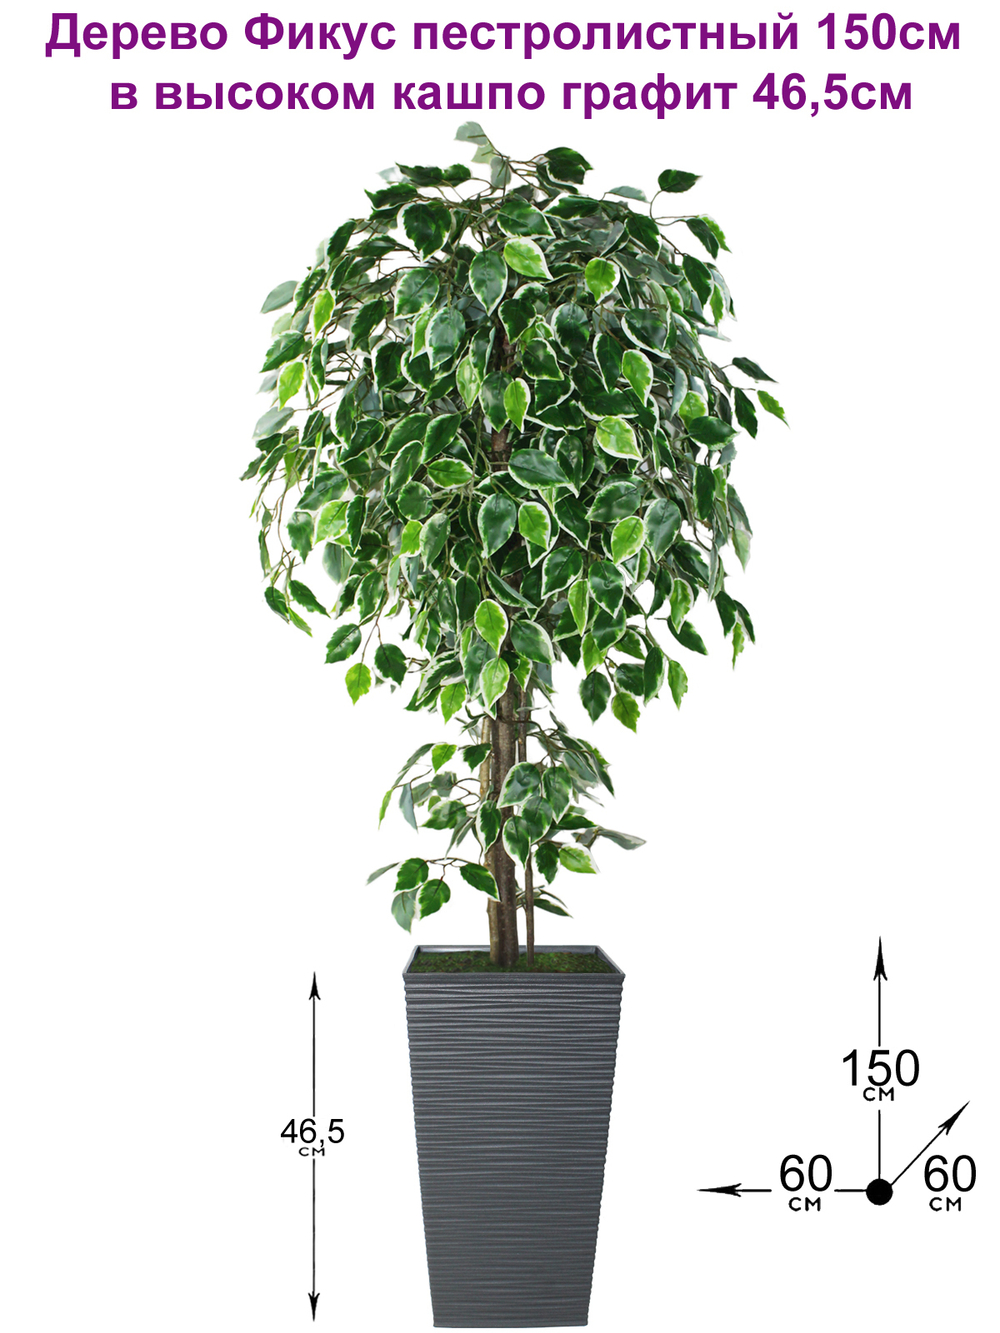 Искусственное дерево Фикус пестролистный 150см в высоком кашпо графит 46 см